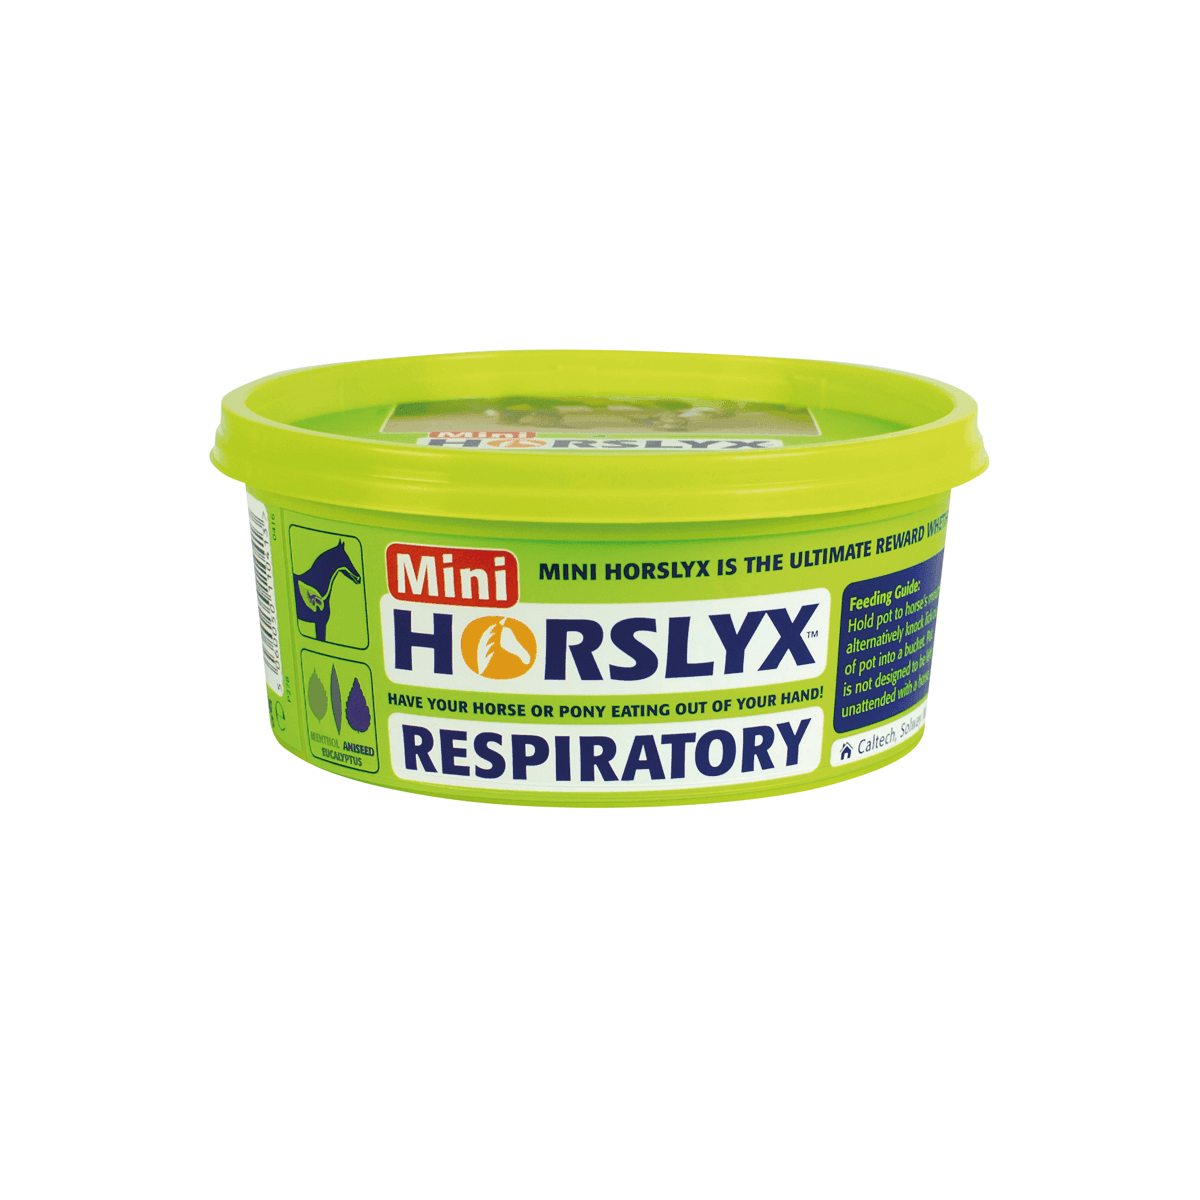 Horslyx Respiratory - HEYO